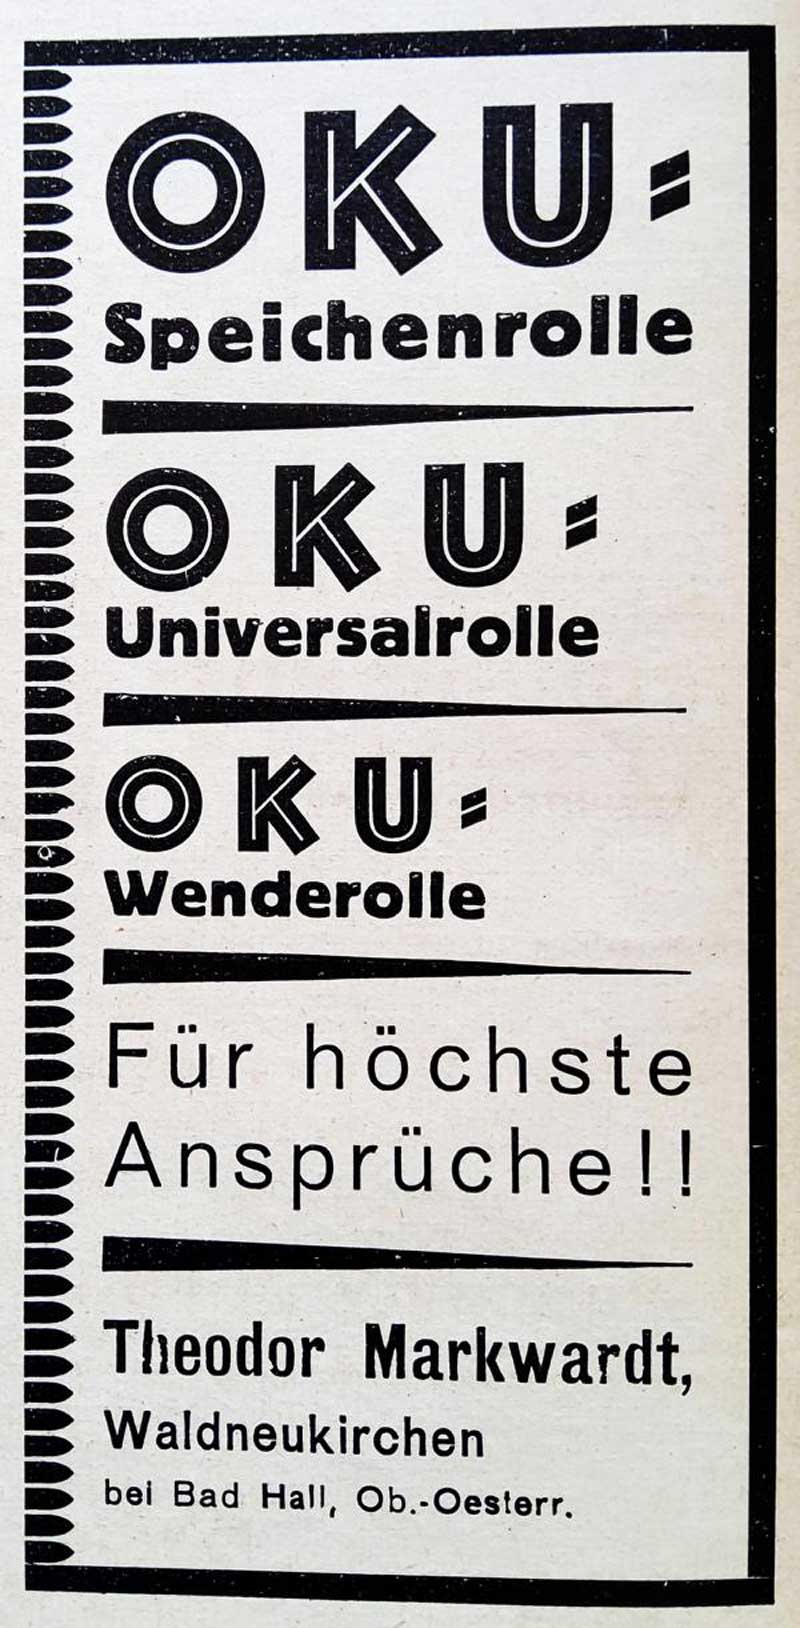 Oku-Anzeige aus "Der Angelsport", März 1931.